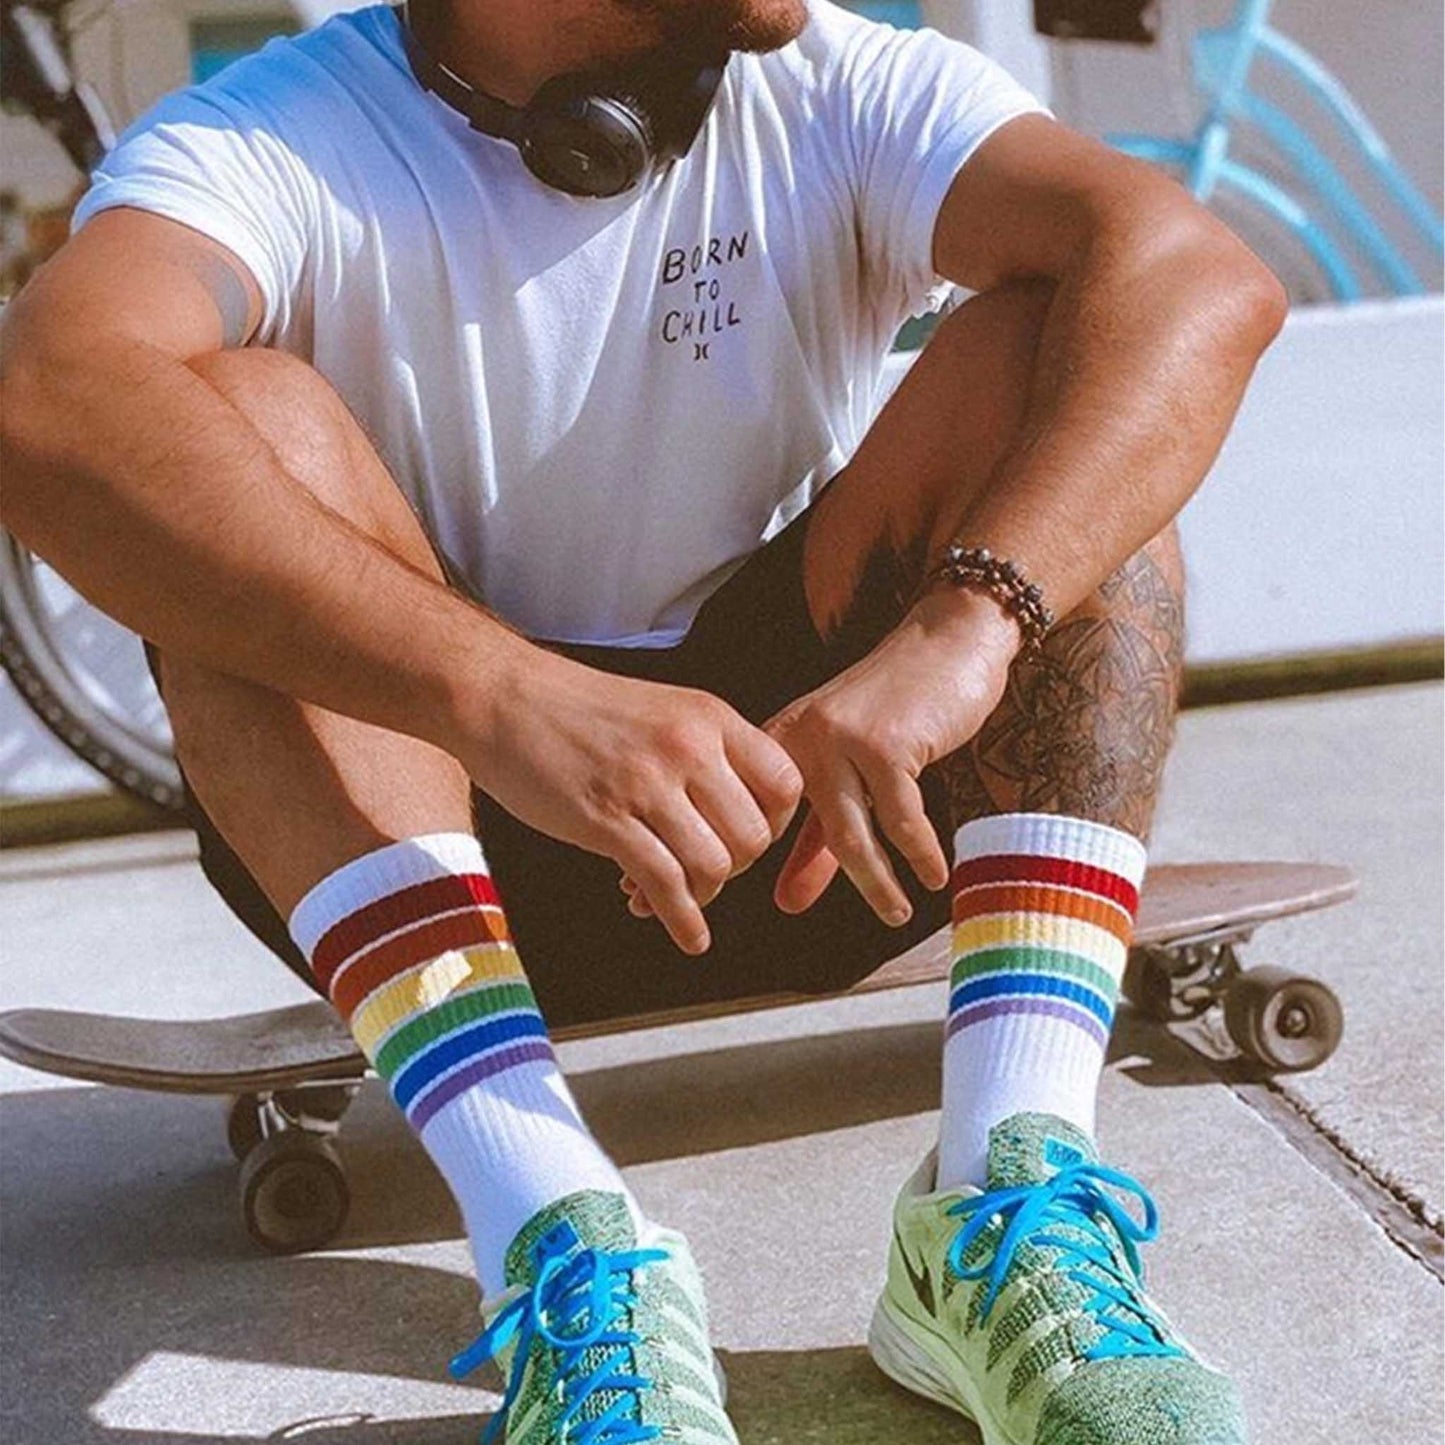 Rainbow Socken